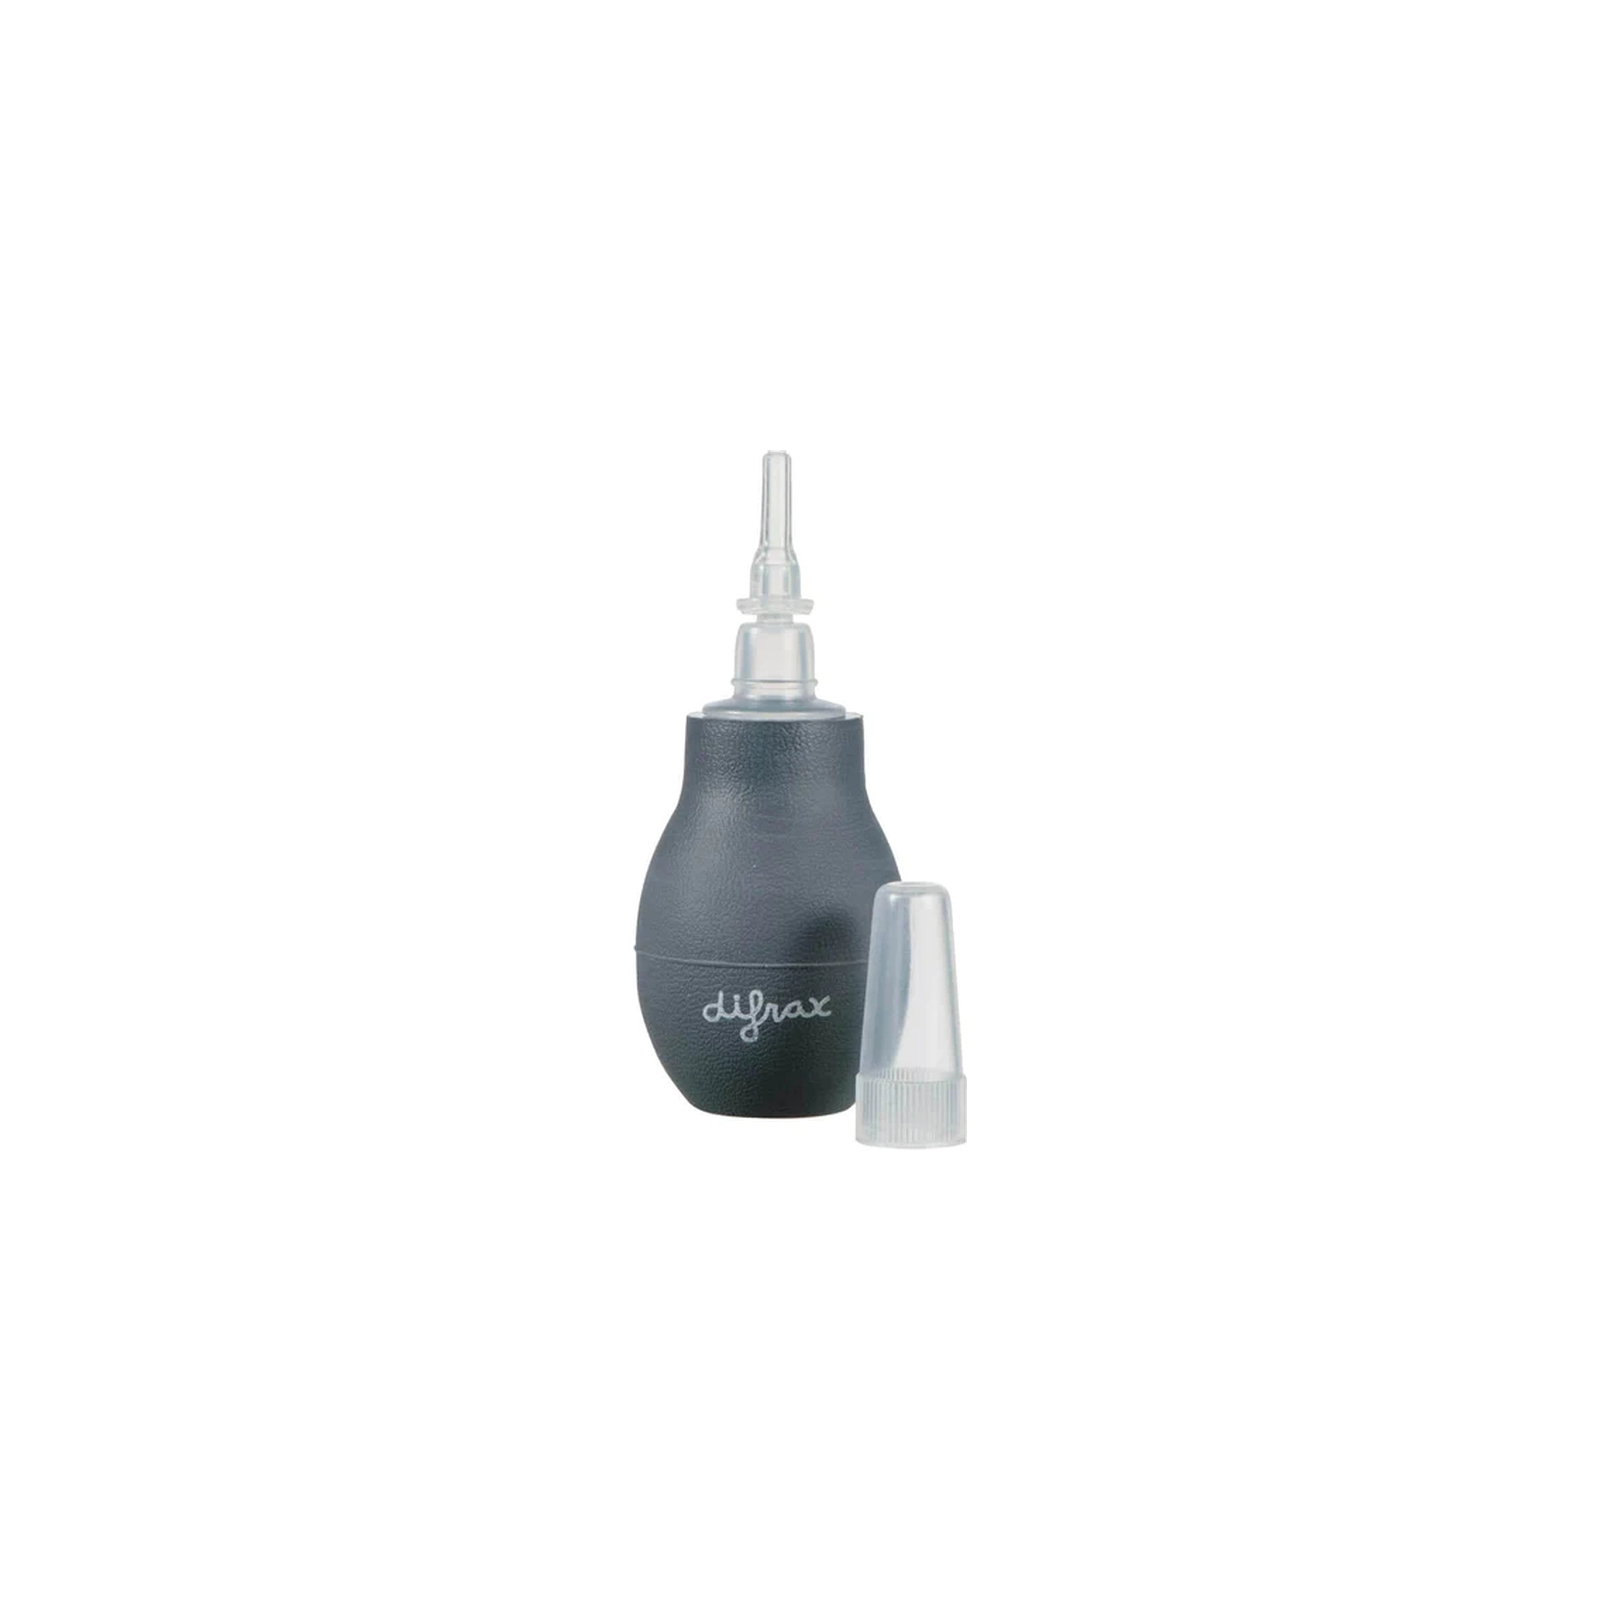 Носовой аспиратор Difrax Nasal aspirator (167) изображение 2